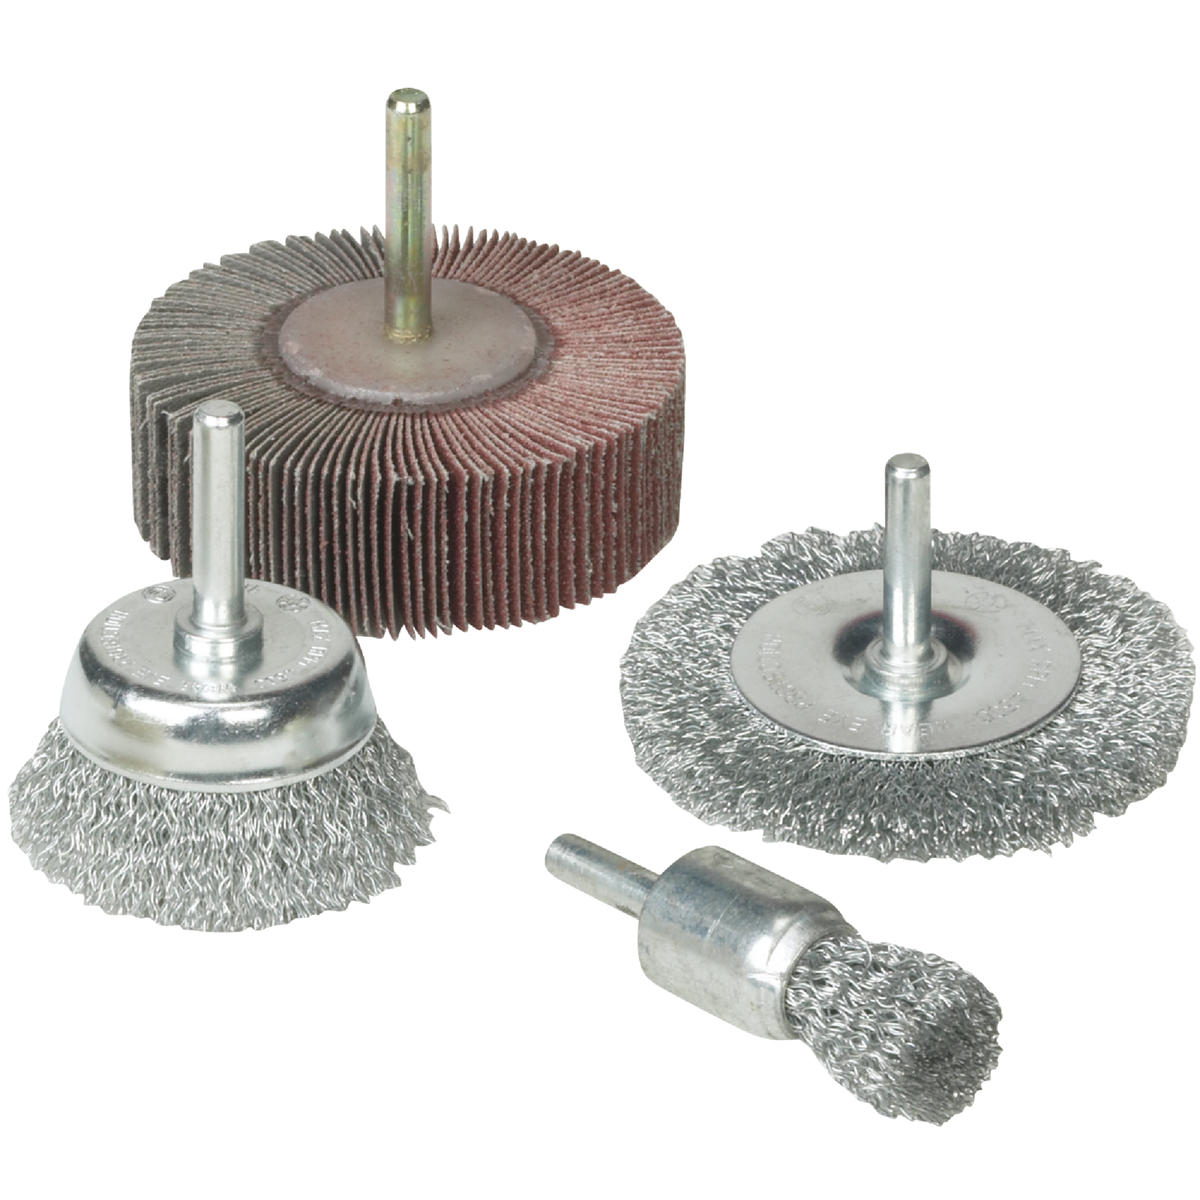 Abrasive Wheel & Brush Set